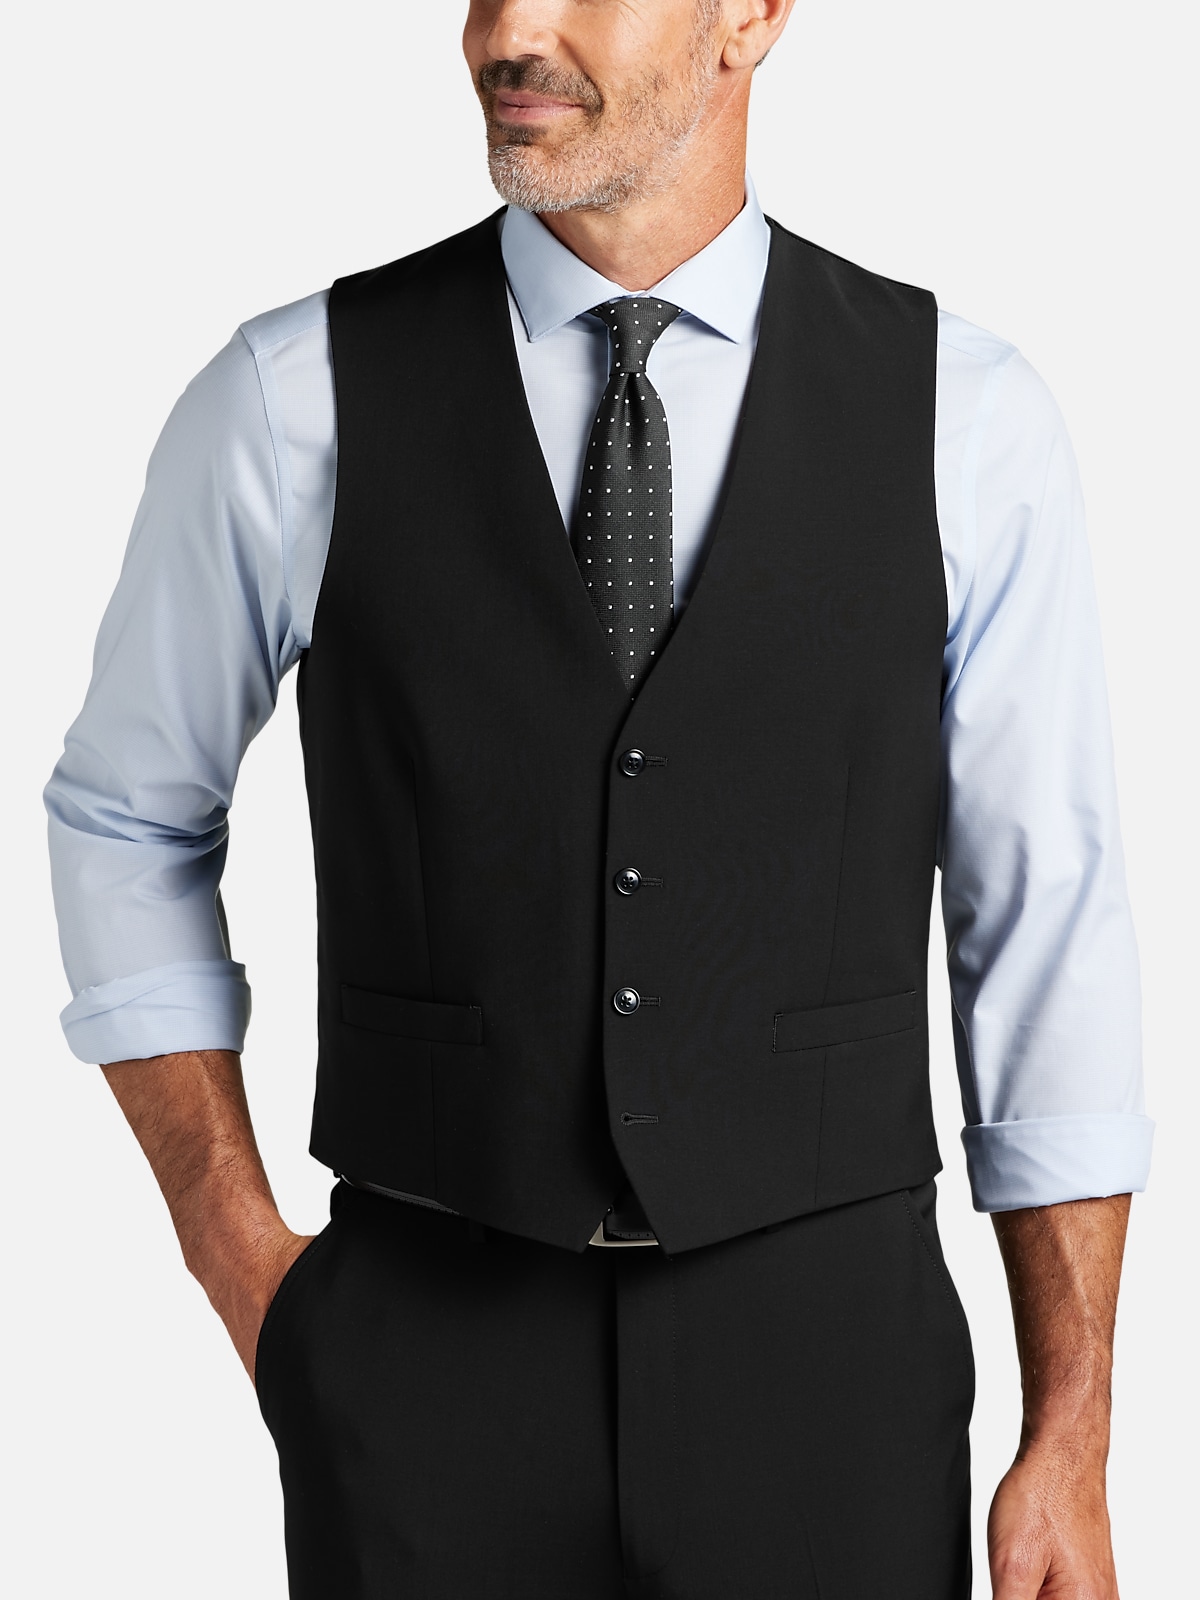 Calvin Klein Slim Fit Suit Separates Vest | All Clearance $39.99| Men's ...